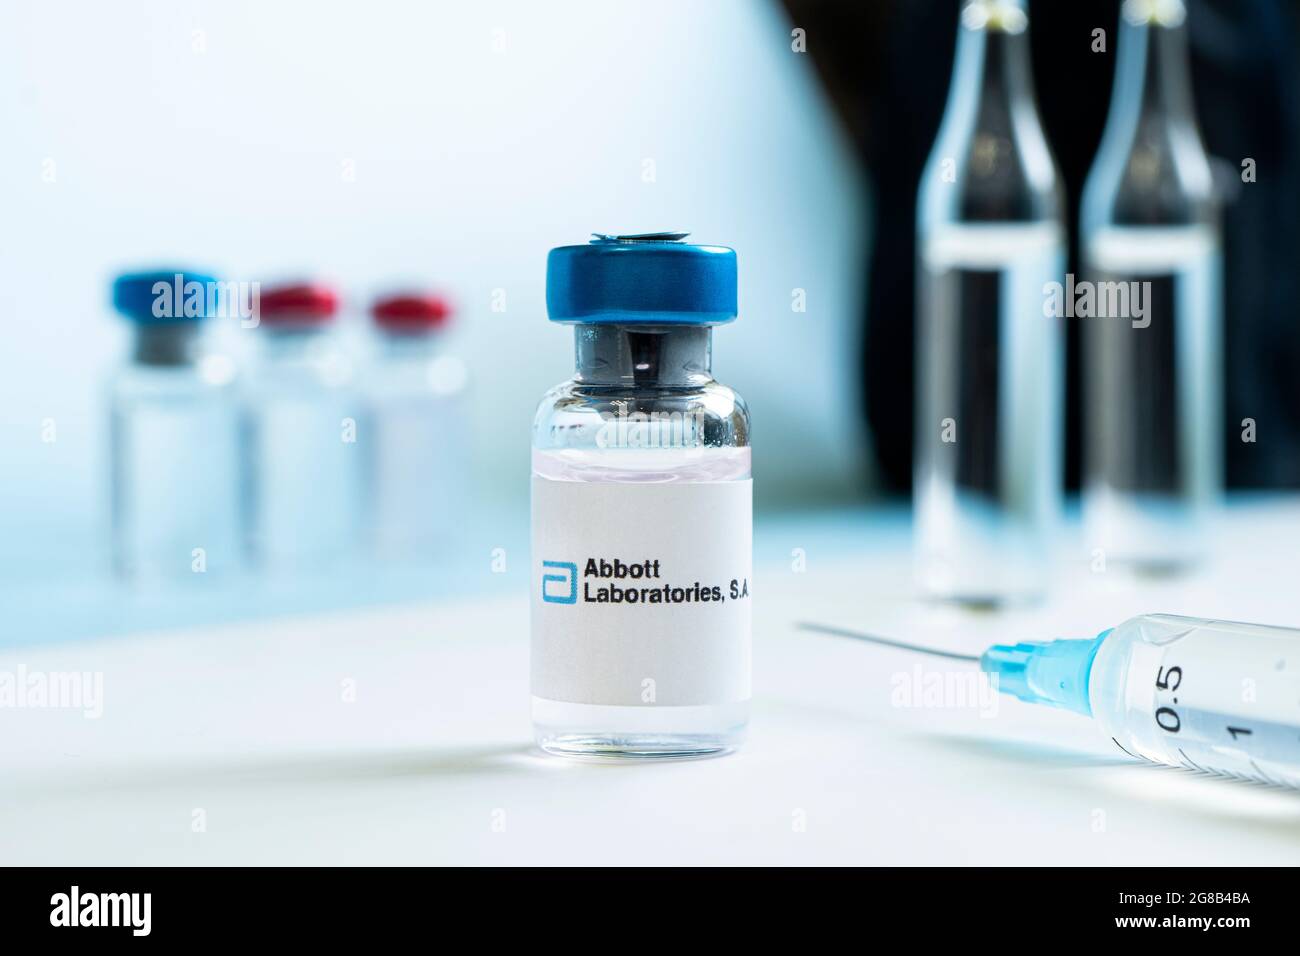 Fläschchen mit Flüssigkeit auf einem weißen Tisch und dem Logo von Abbott Laboratories, einem großen Pharmaunternehmen. 15. März 2021. Barnaul, Russland. Stockfoto